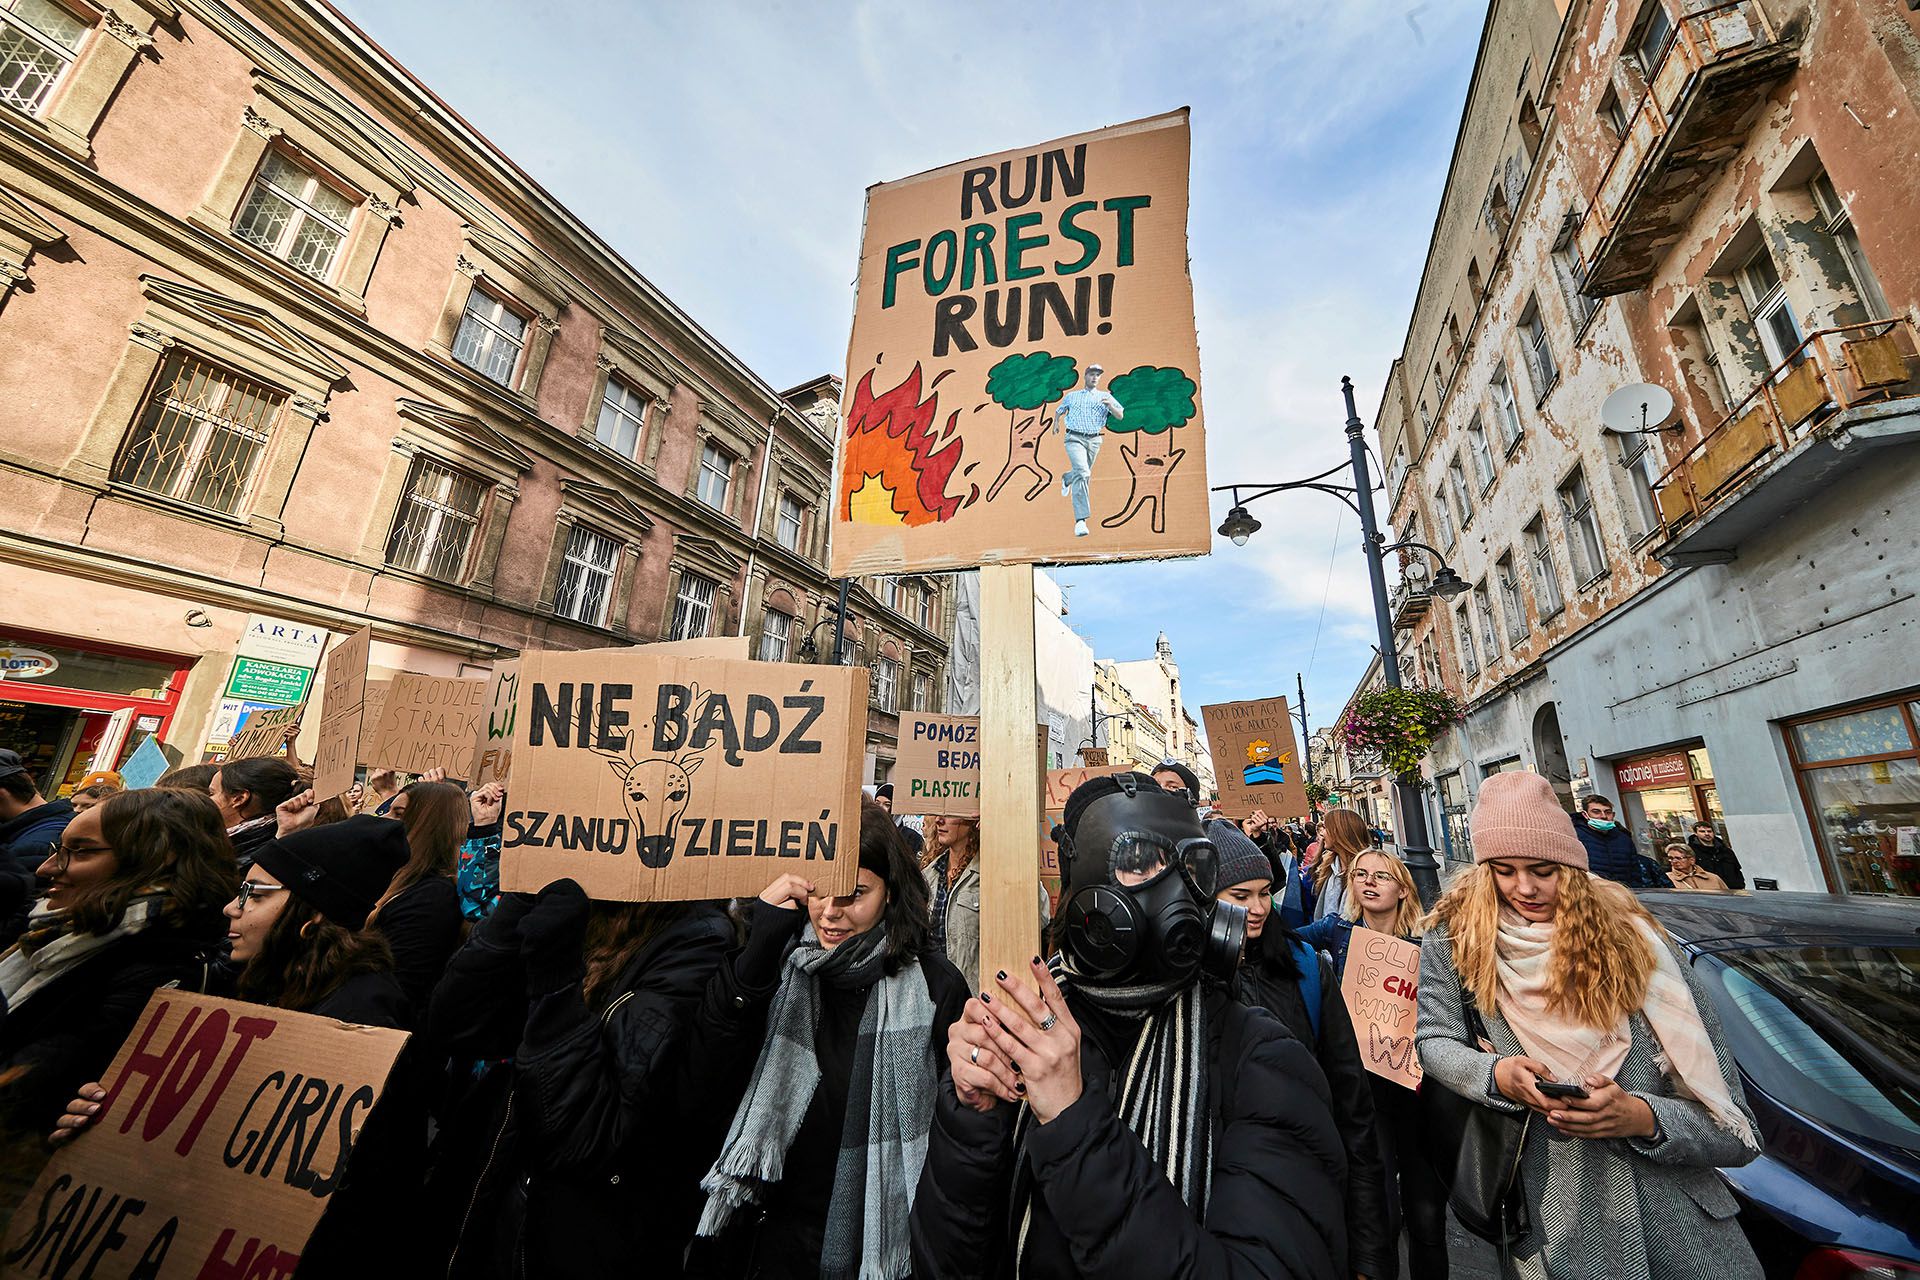 Jóvenes activistas participan de la manifestación ambiental en Lodz, Polonia, el 20 de septiembre de 2019 (Tomasz Stanczak/Agencja Gazeta via REUTERS)